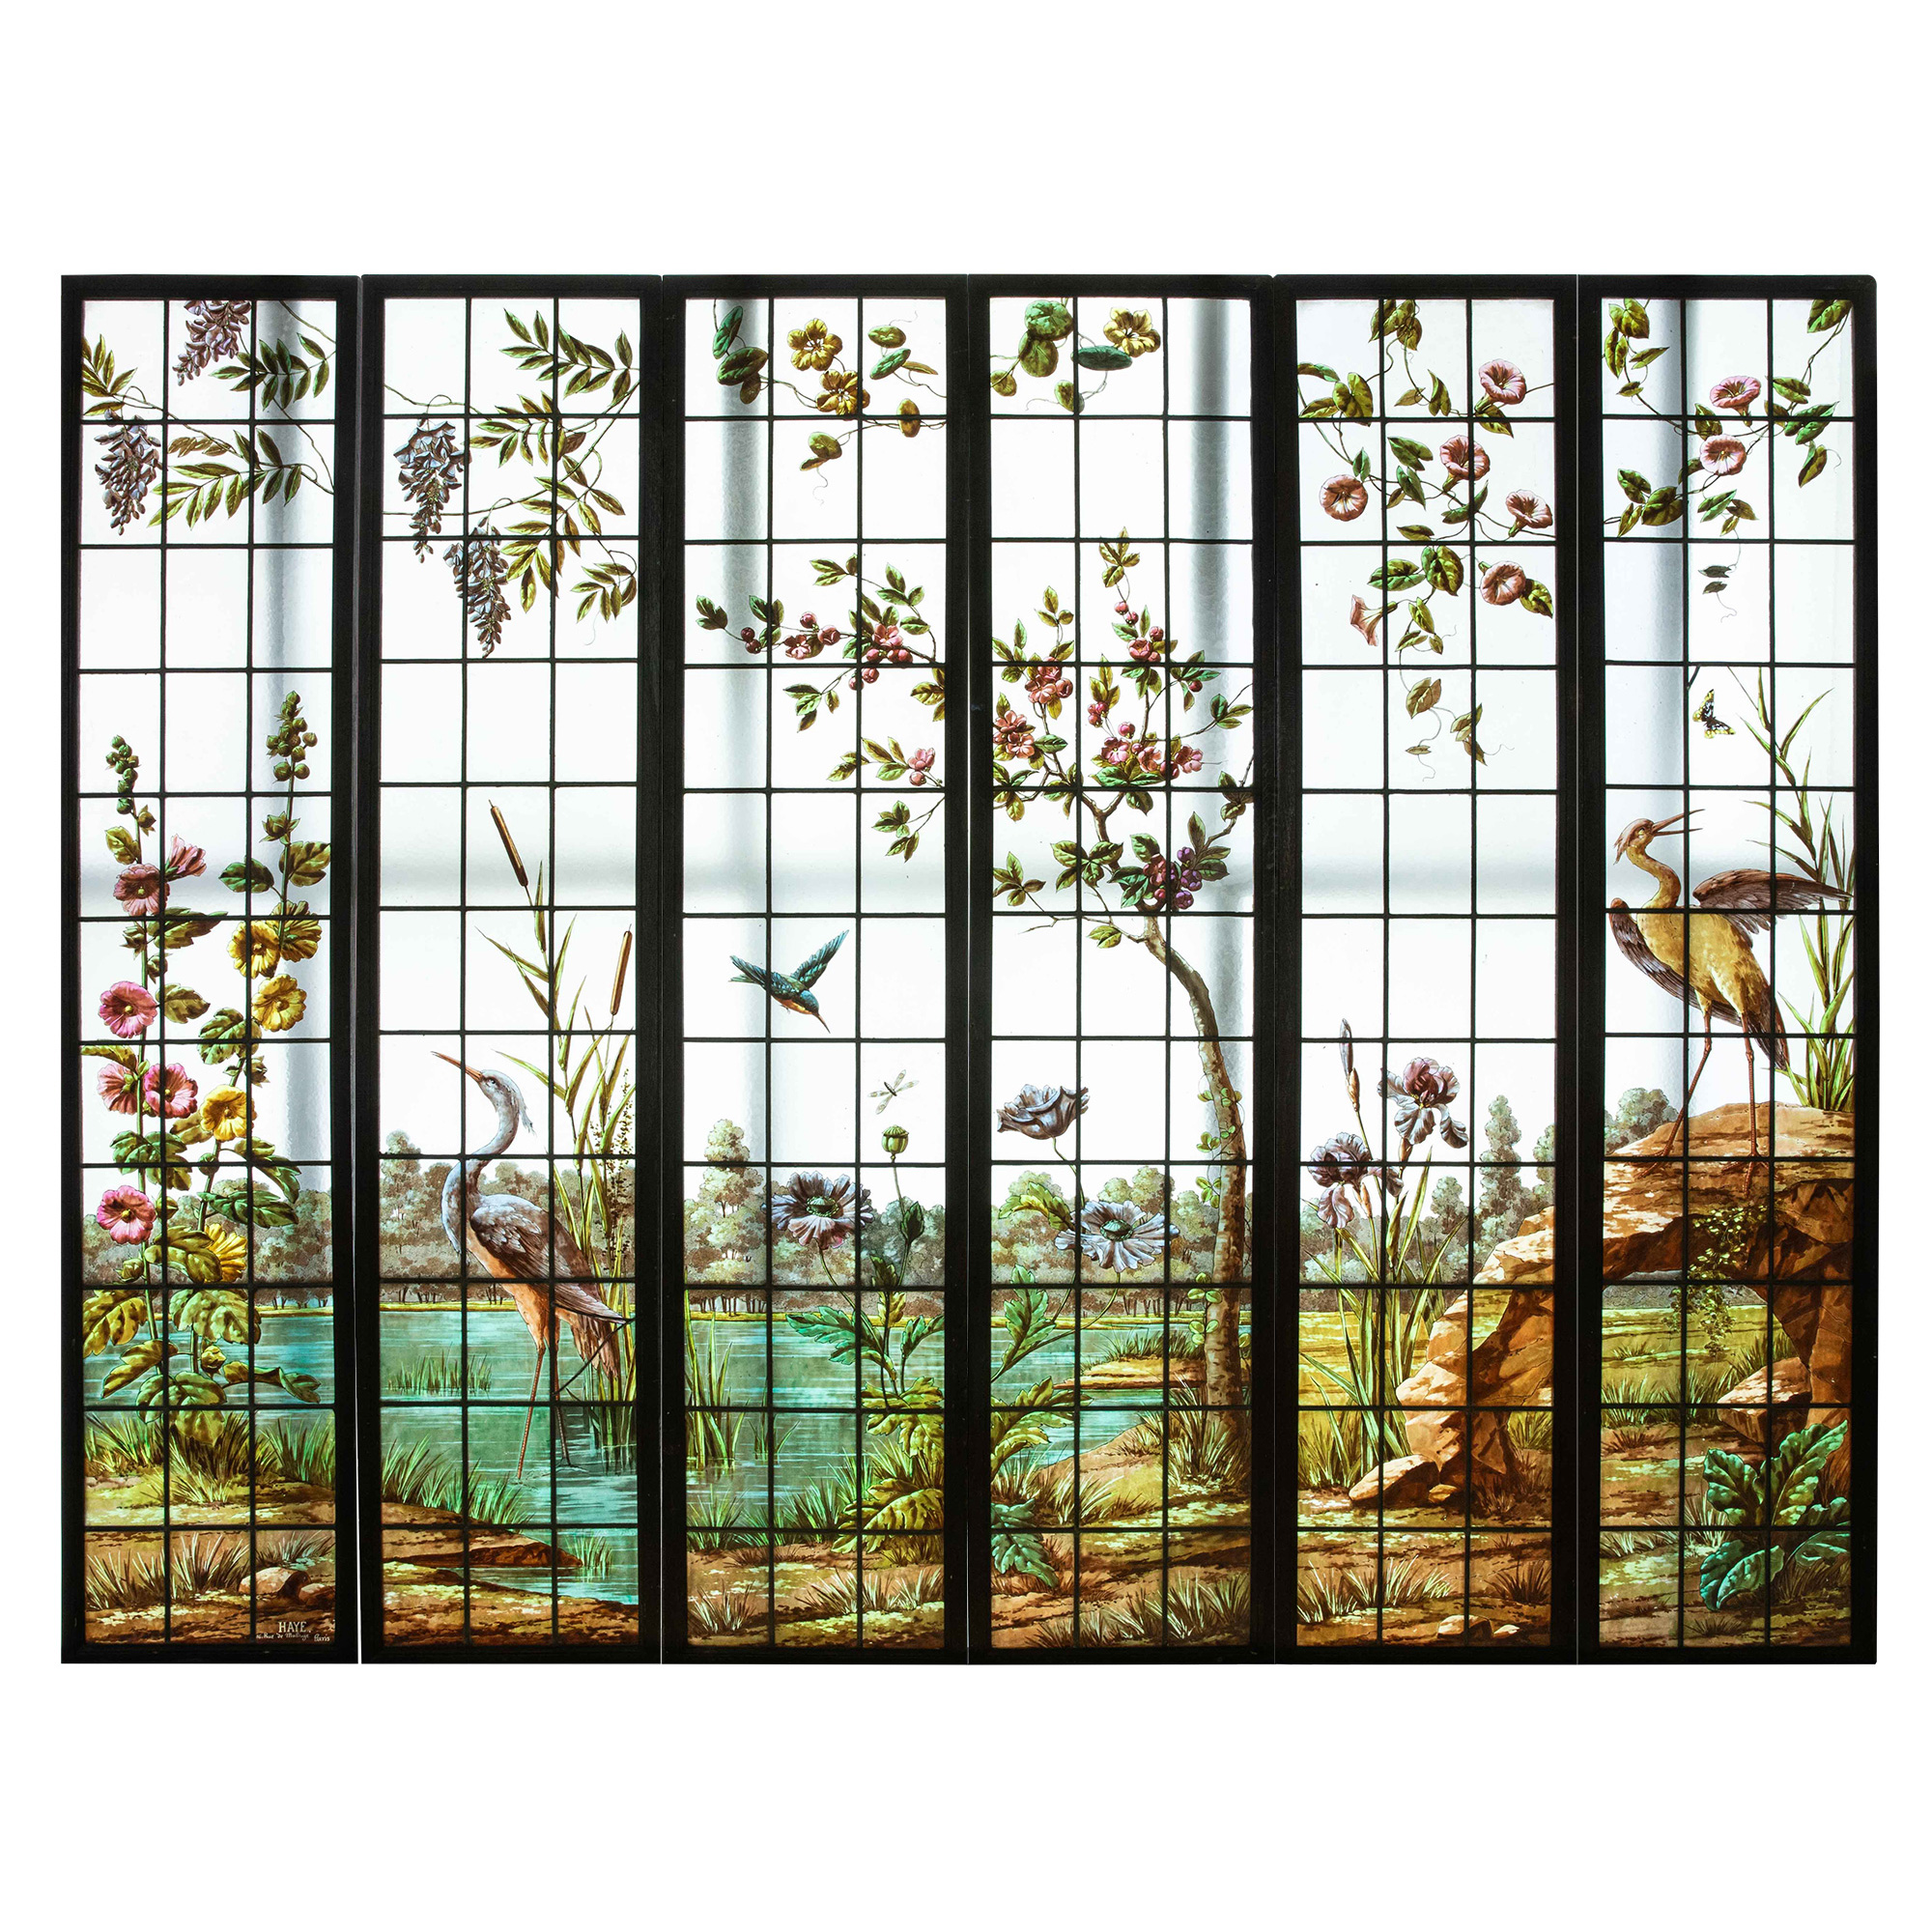 独角鹿西洋古董19世纪法国出品新艺术风格湖畔花鸟主题彩绘玻璃花窗六扇